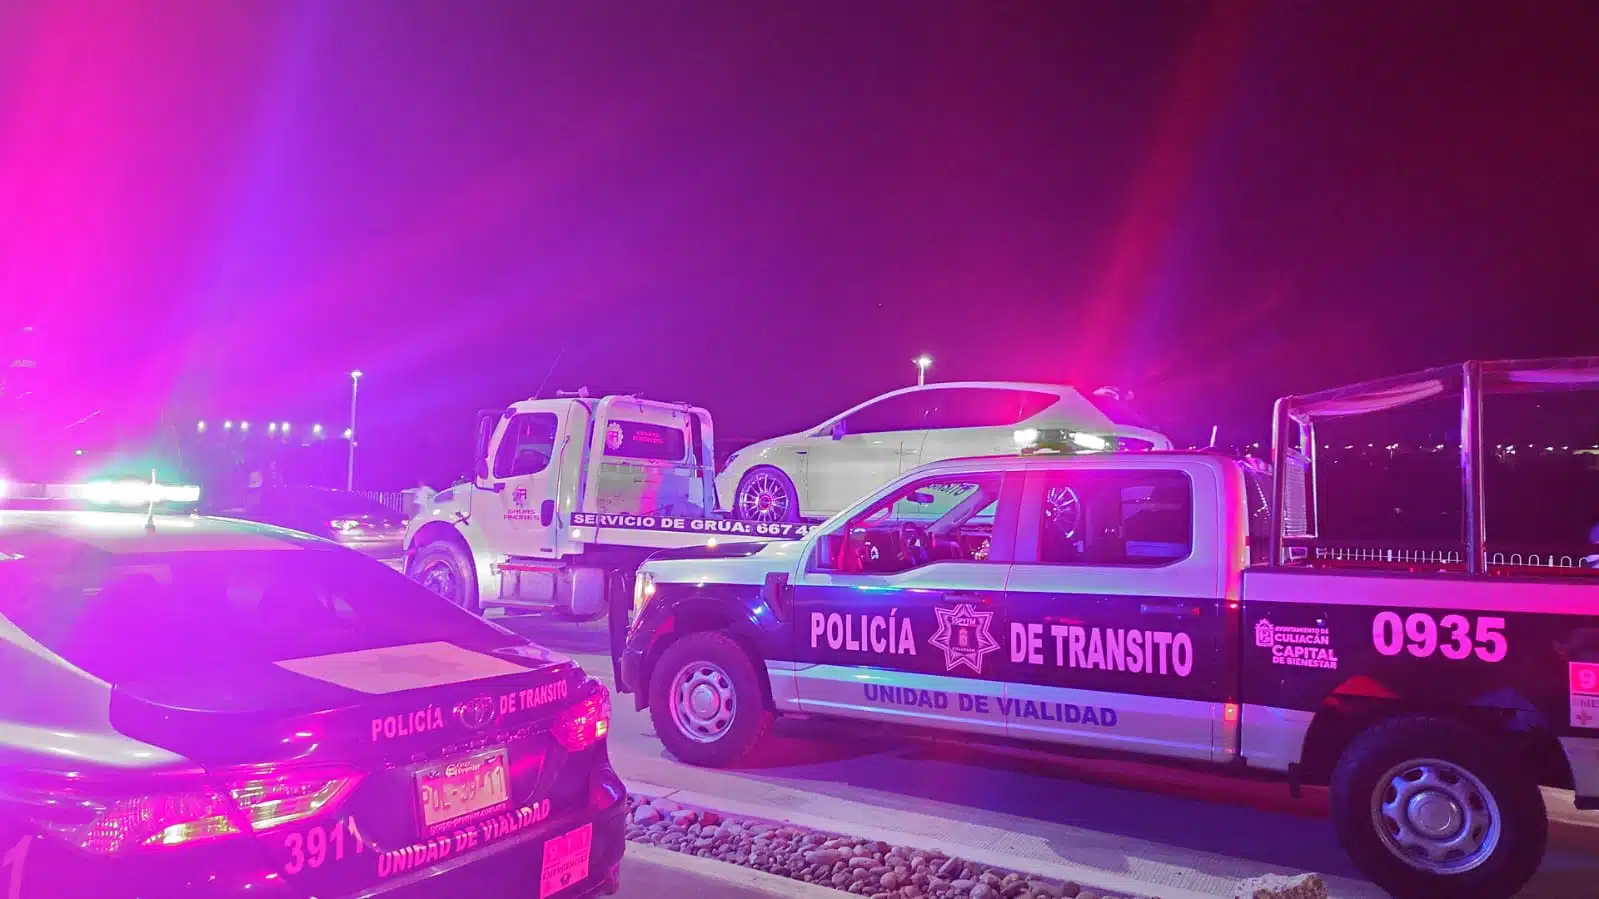 Patrullas de la Policía Municipal, al fondo un carro arriba de una grúa durante un operativo en Culiacán